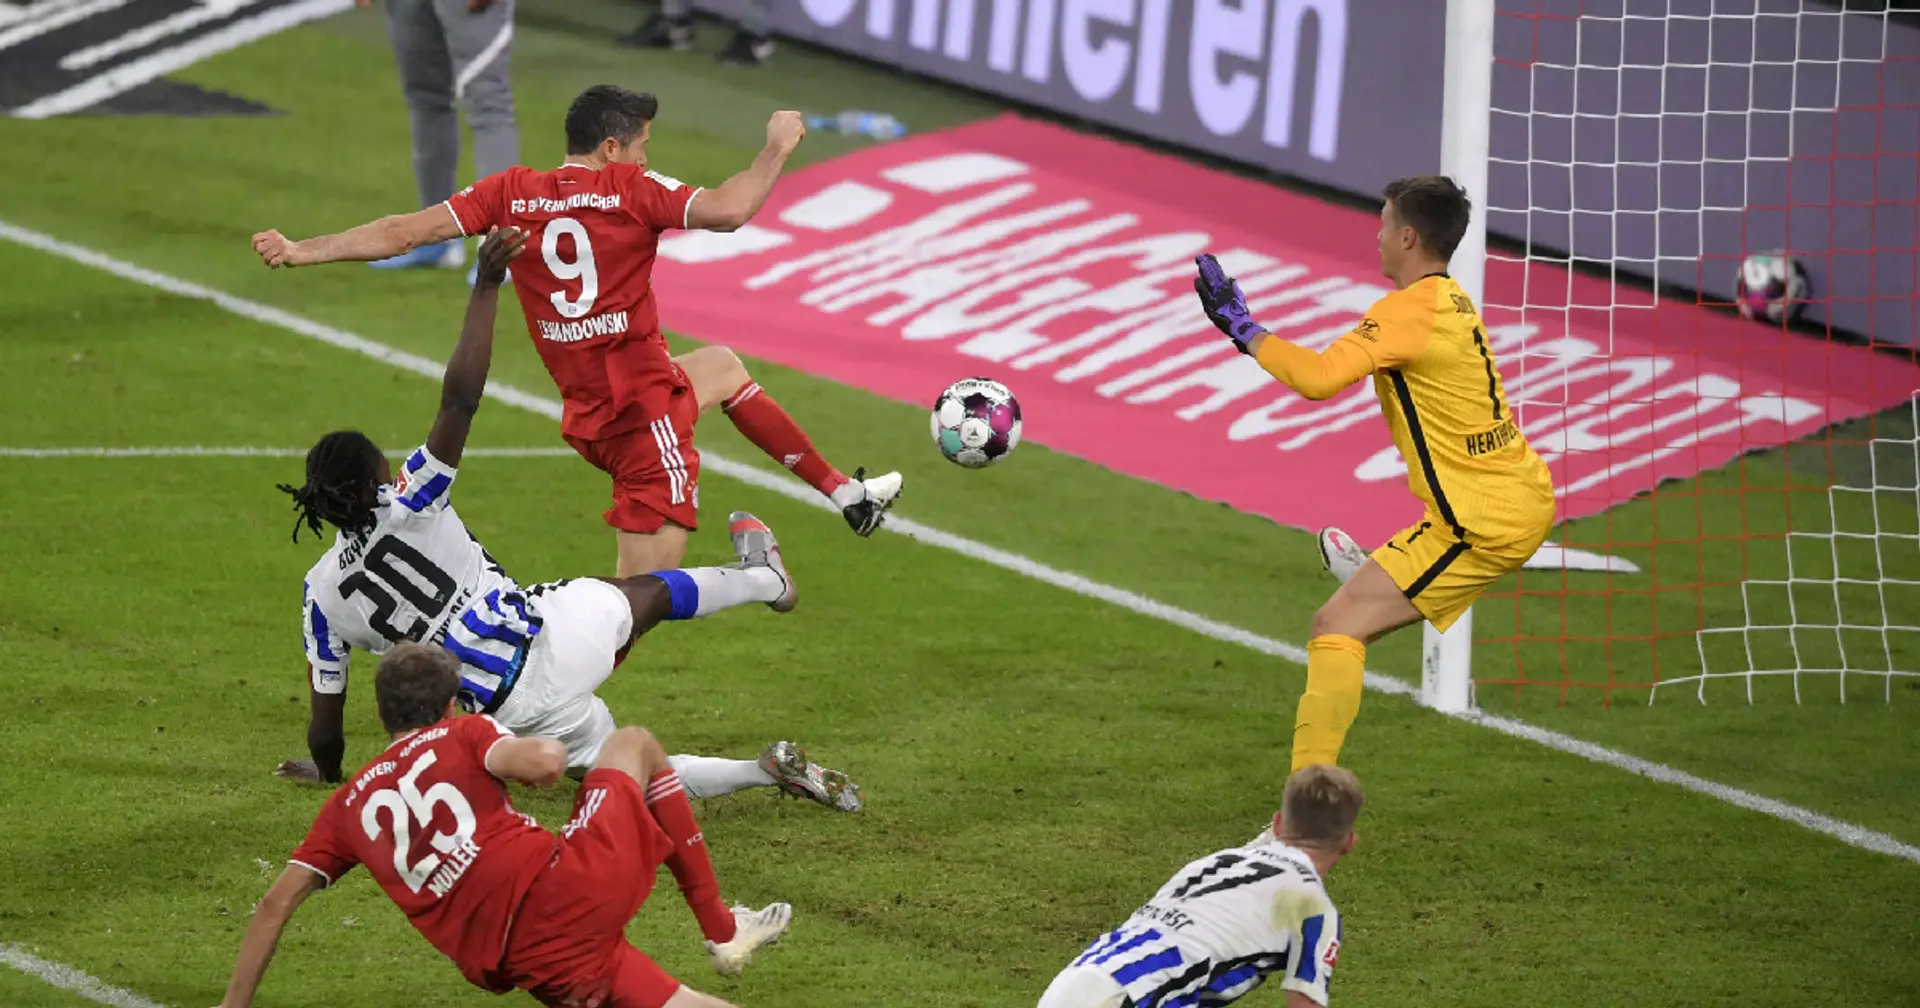 Hertha-Torwart Schwolow: "Die Spieler von Bayern, die in den Strafraum gehen, sind so torgeil"